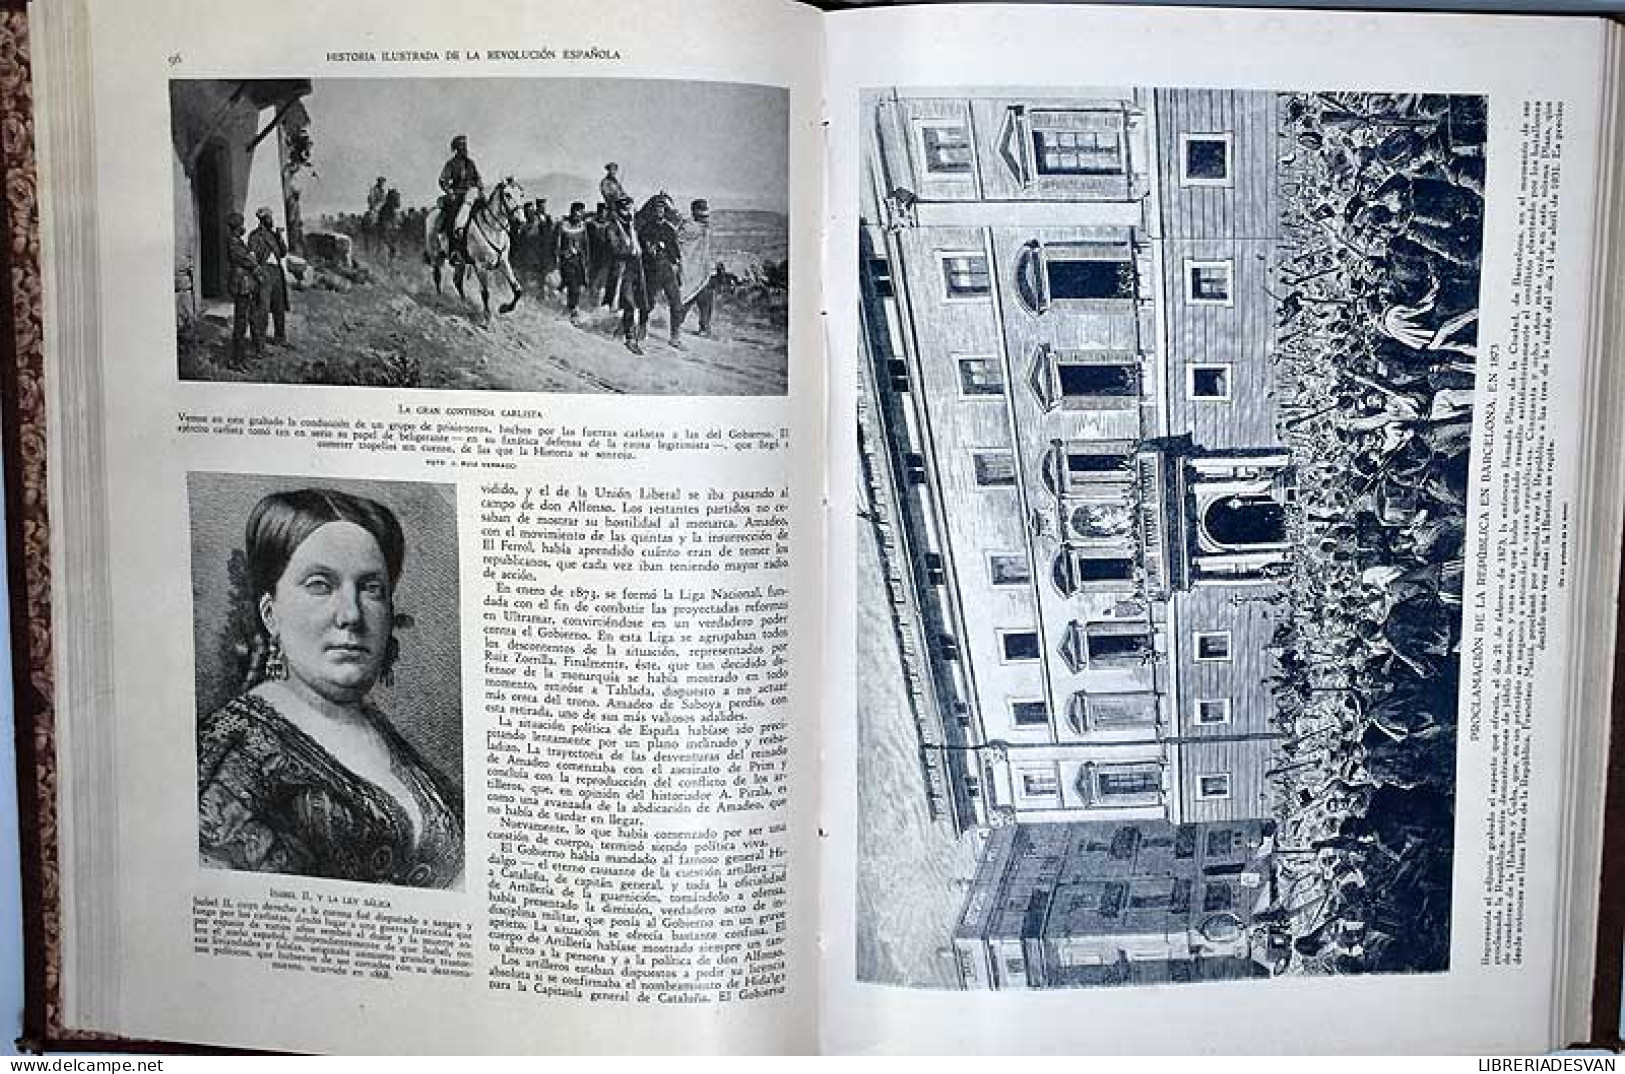 Historia Ilustrada De La Revolución Española (1870-1931). 2 Vols. - F. Caravaca Y A. Orts-Ramos - Historia Y Arte